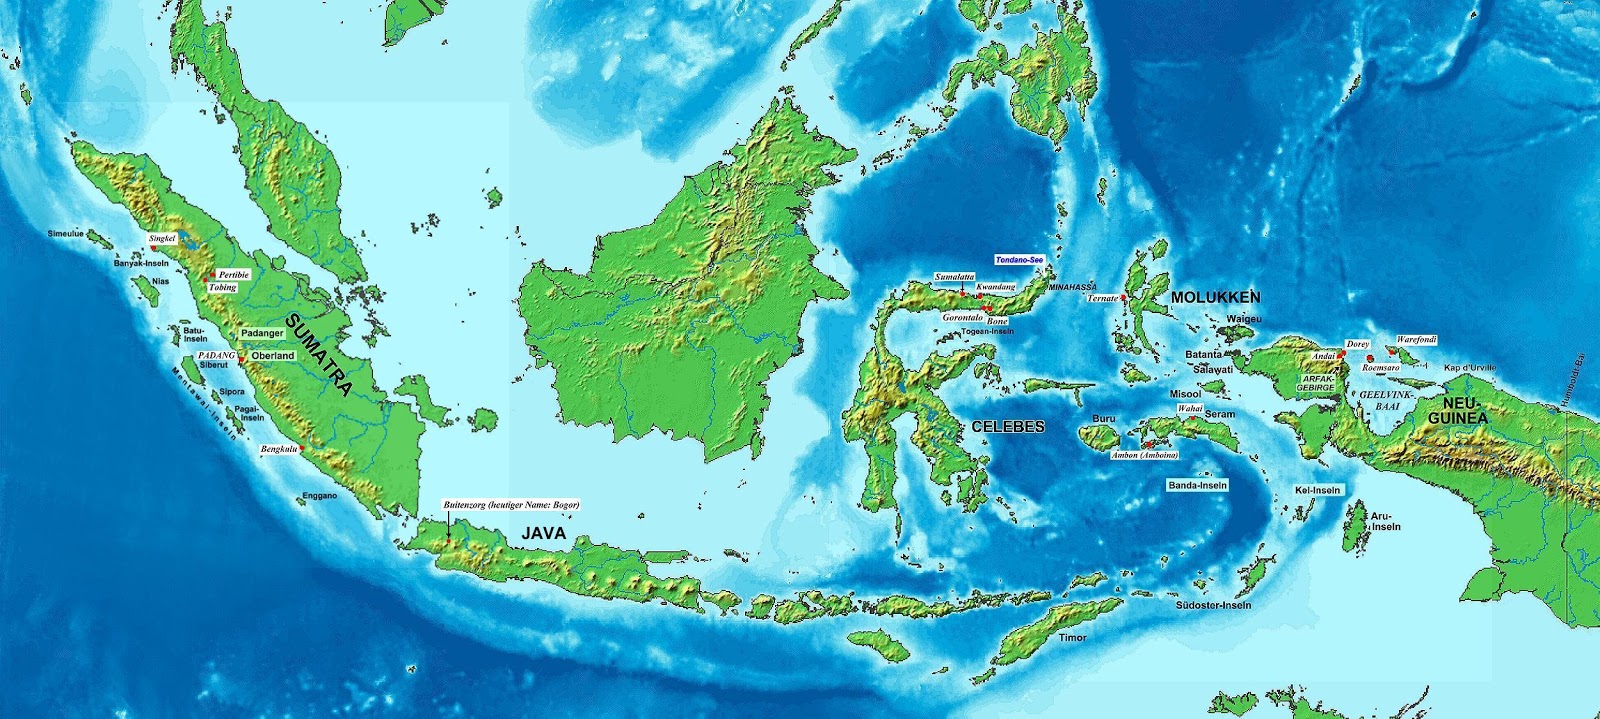 Gambar Peta Indonesia  Lengkap Kumpulan Gambar Lengkap